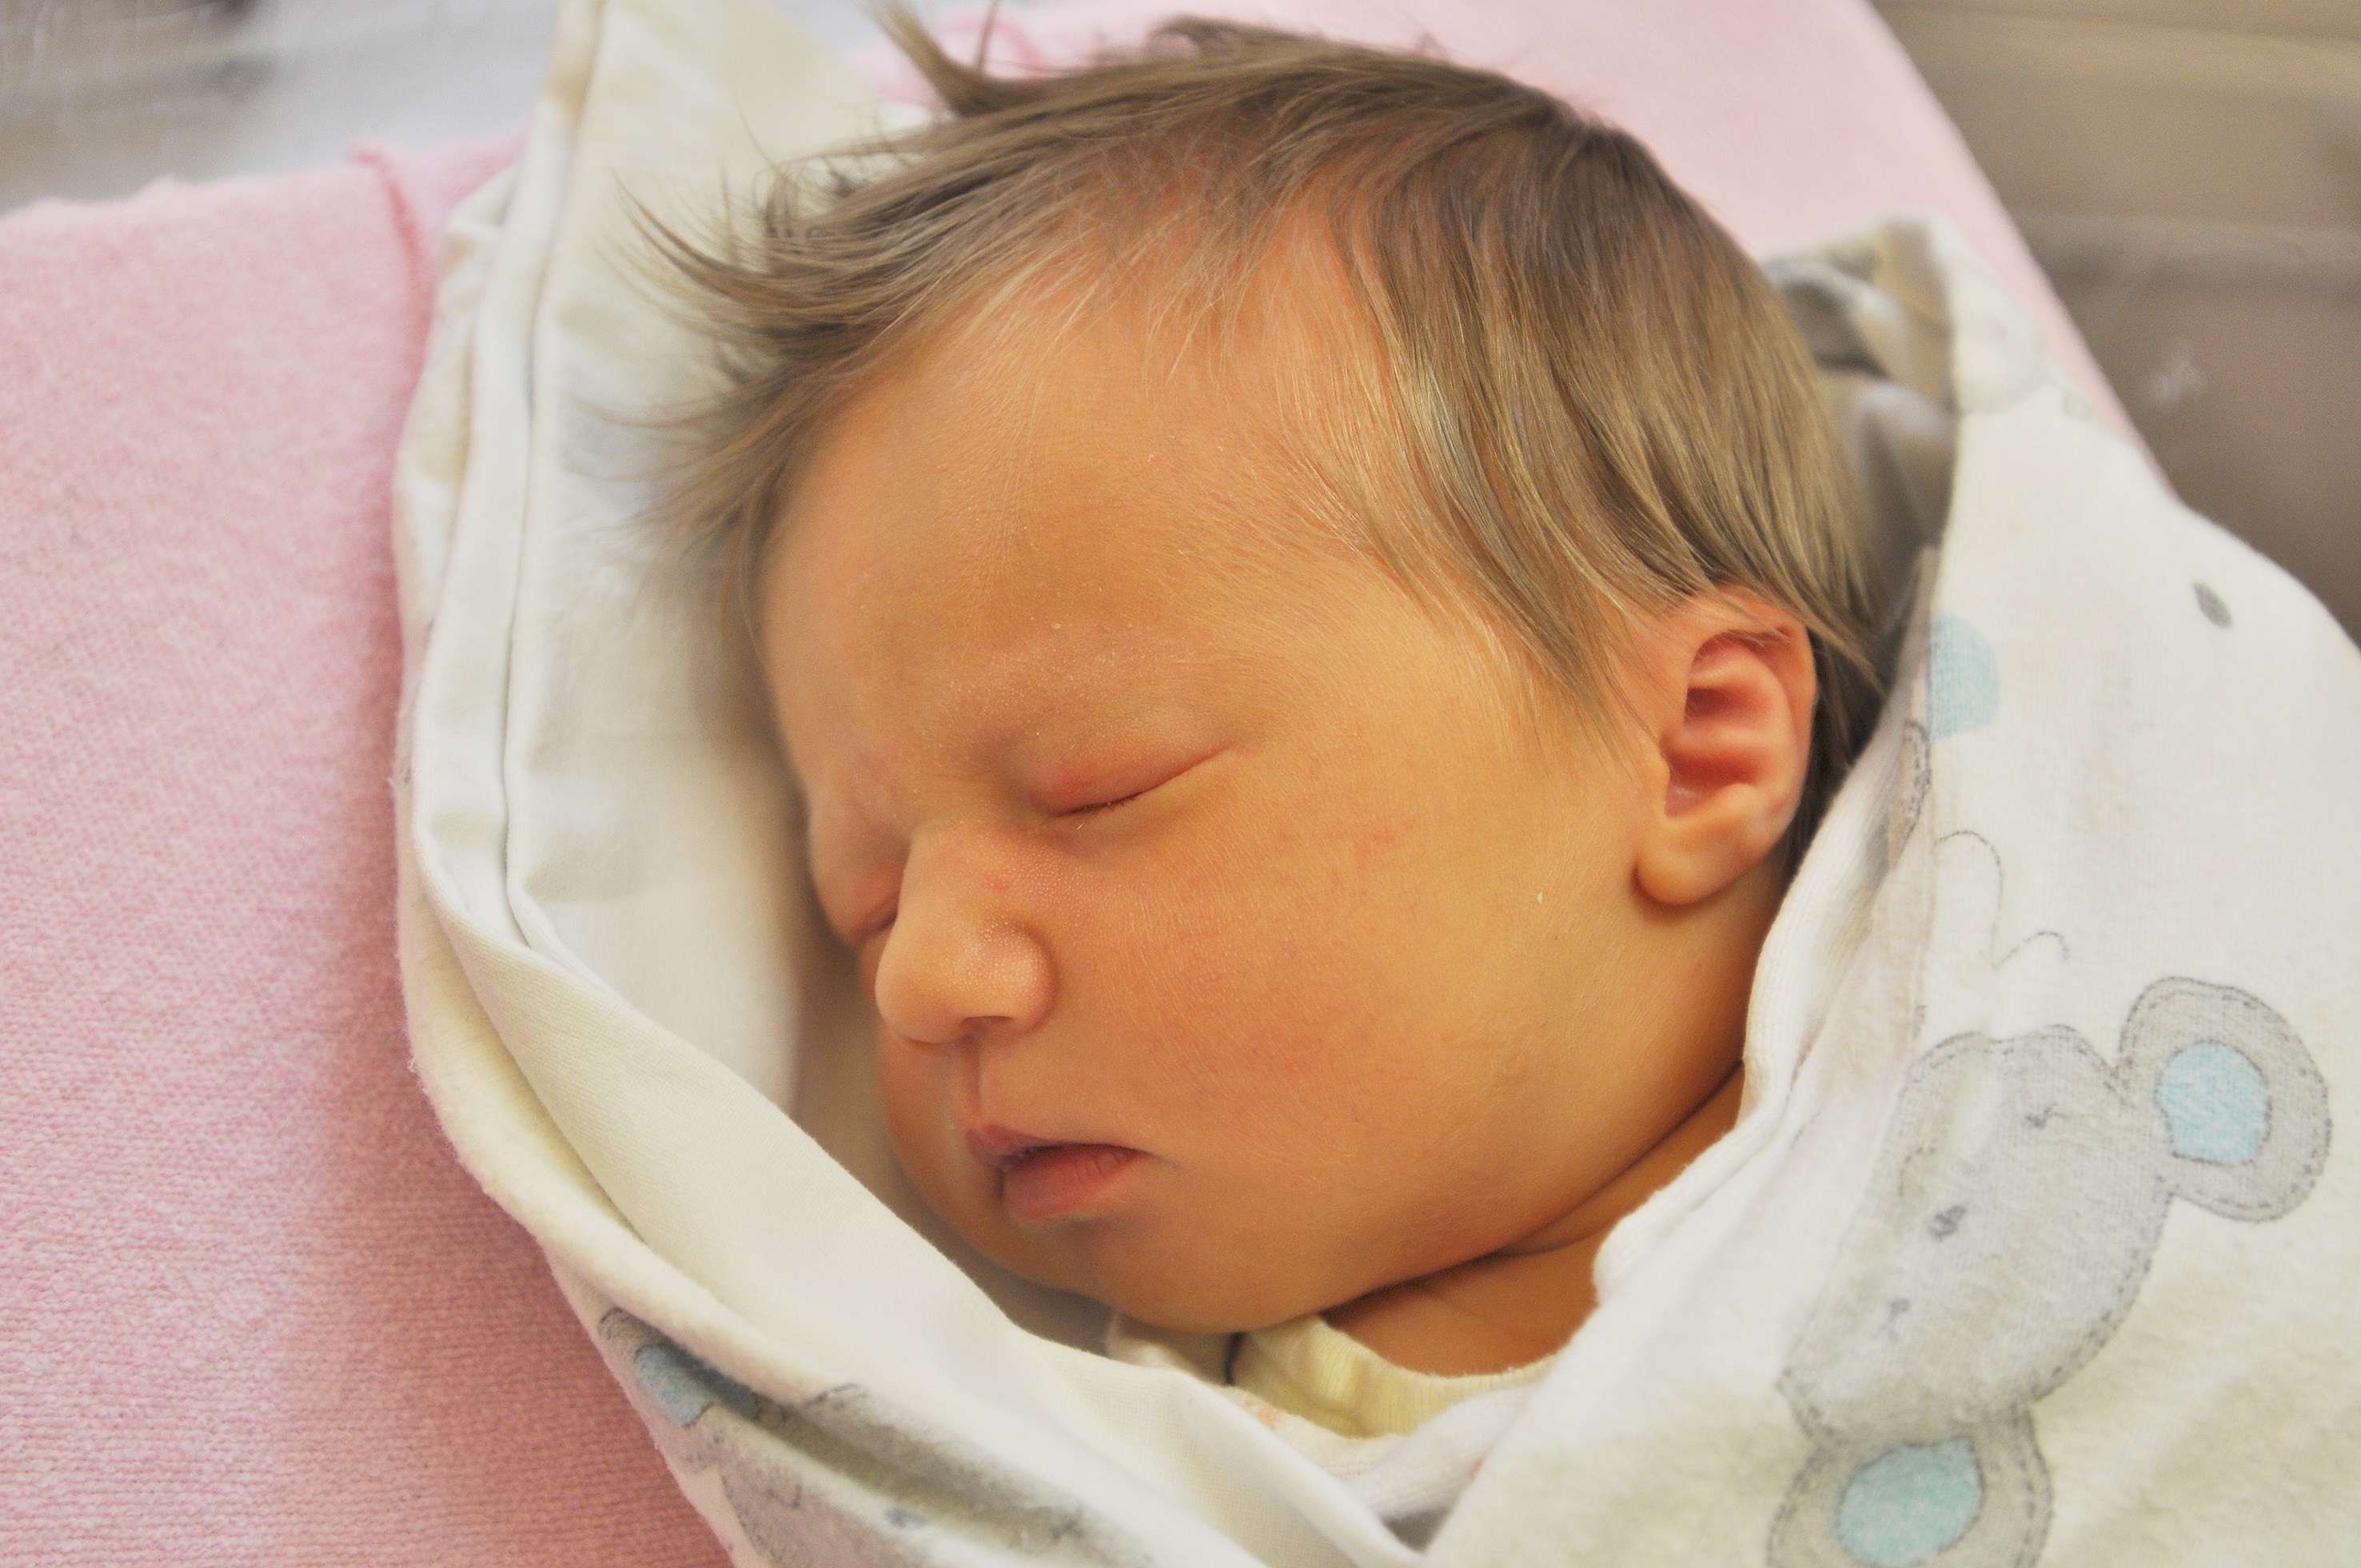 Hania Kałuża urodziła się w Raciborzu, ale mieszka w miejscowości Maciowaksze. 18 kwietnia o 15.00 ważyła 3240 g i mierzyła 50 cm. Mama Ania i tato Damian są szczęśliwi z narodzin pierwszego dziecka.